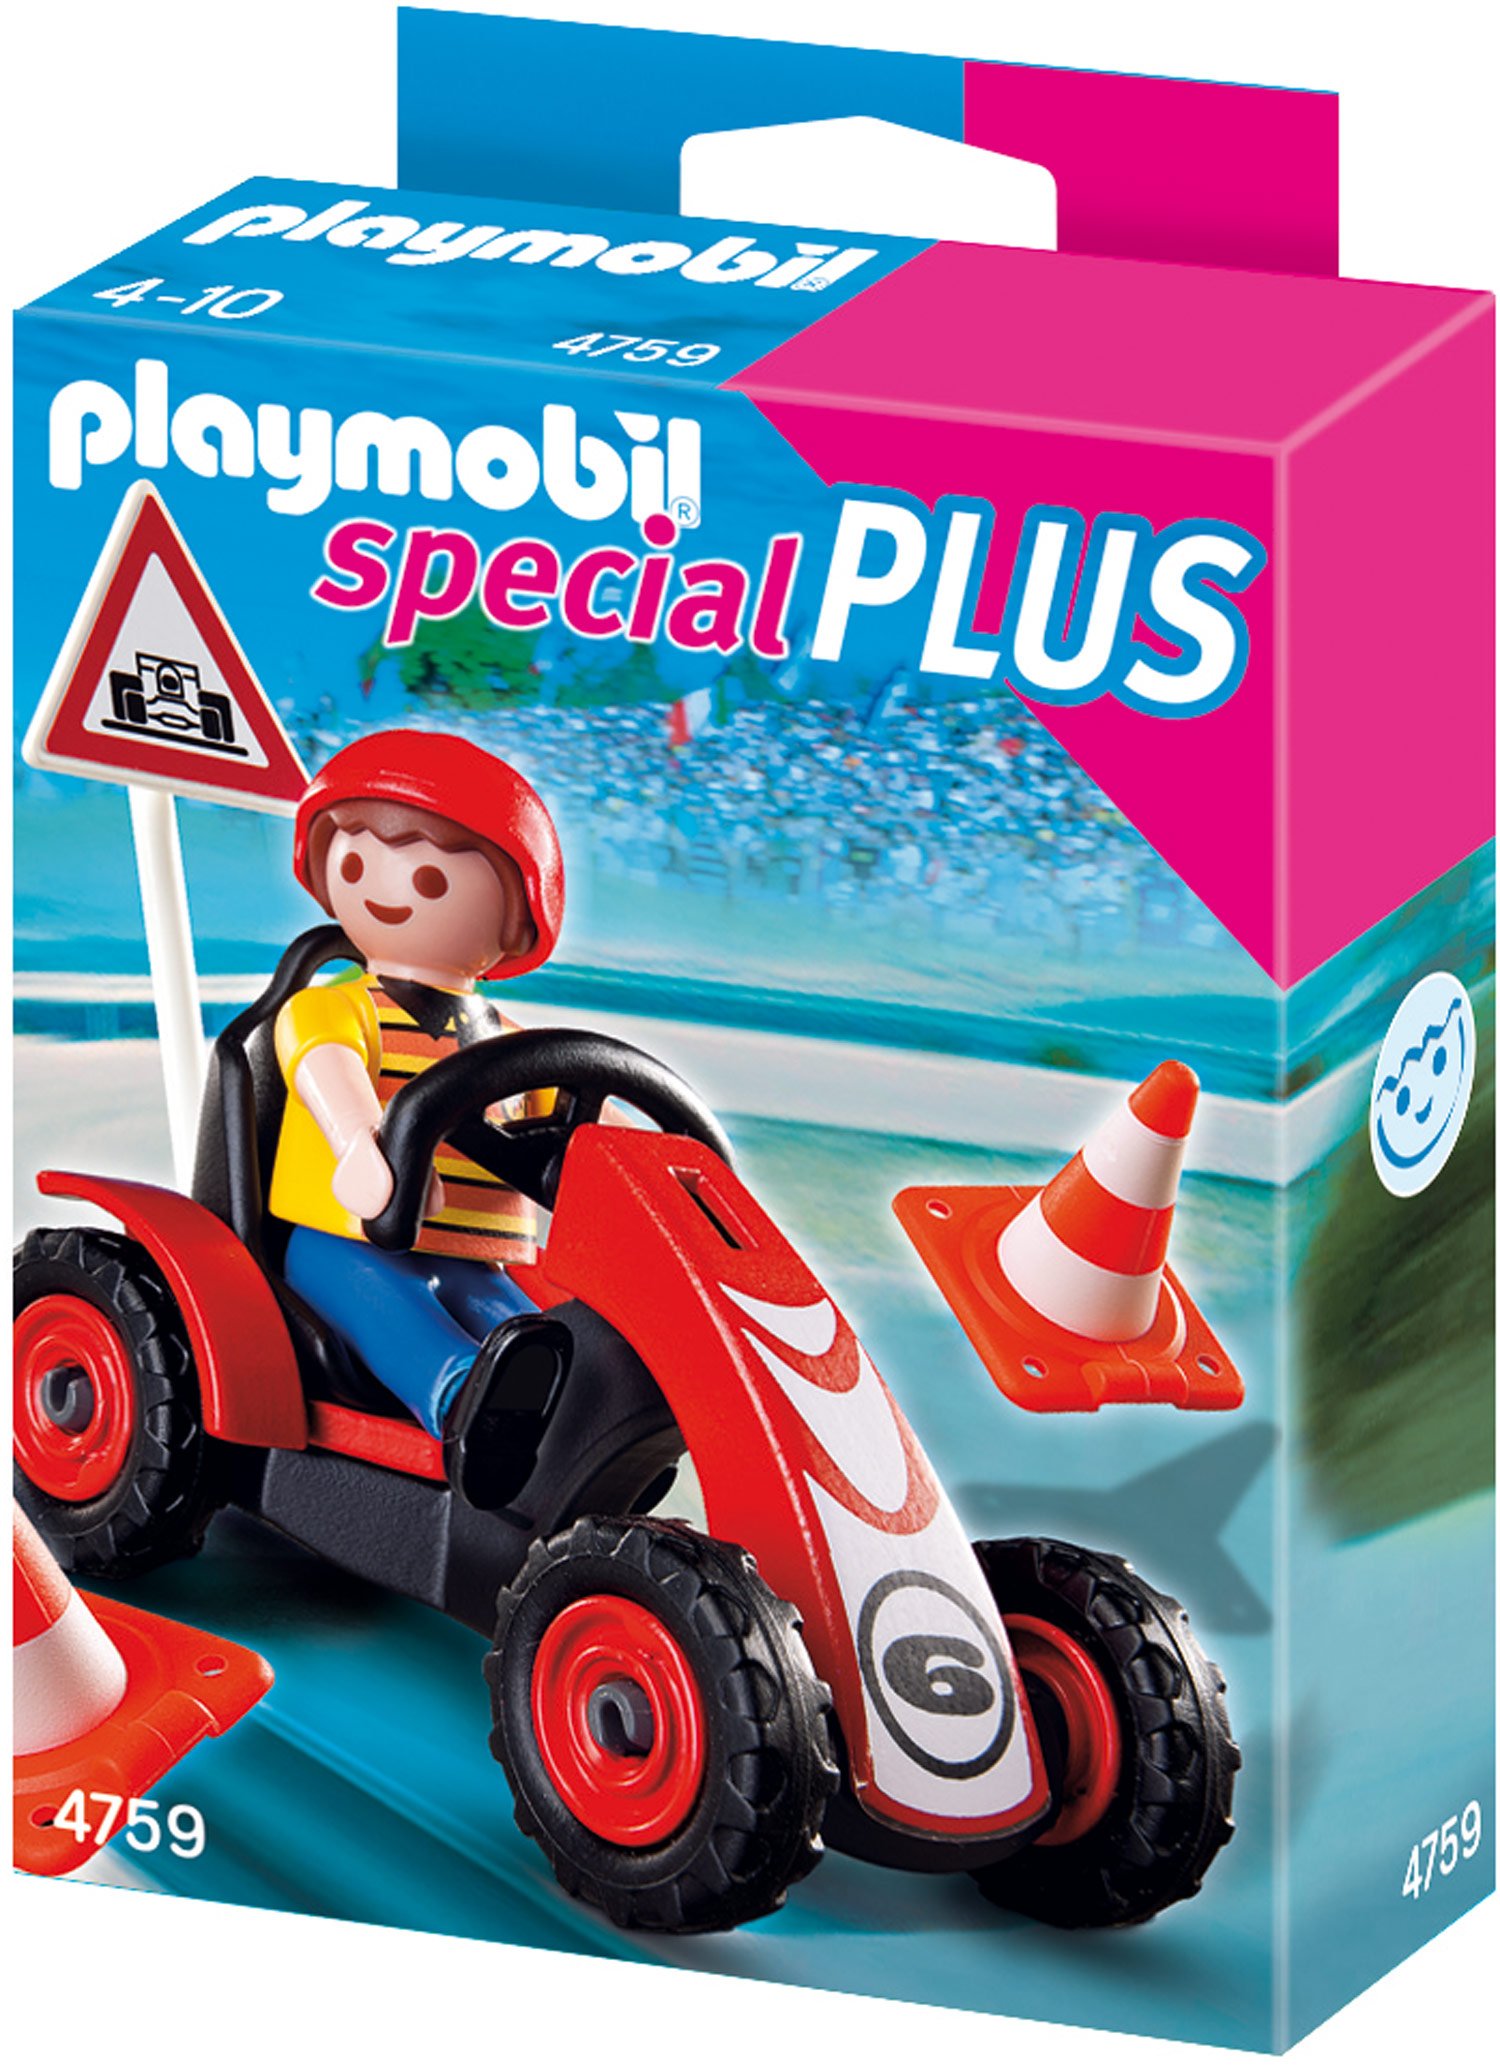 Playmobil Boy With Racing Cart